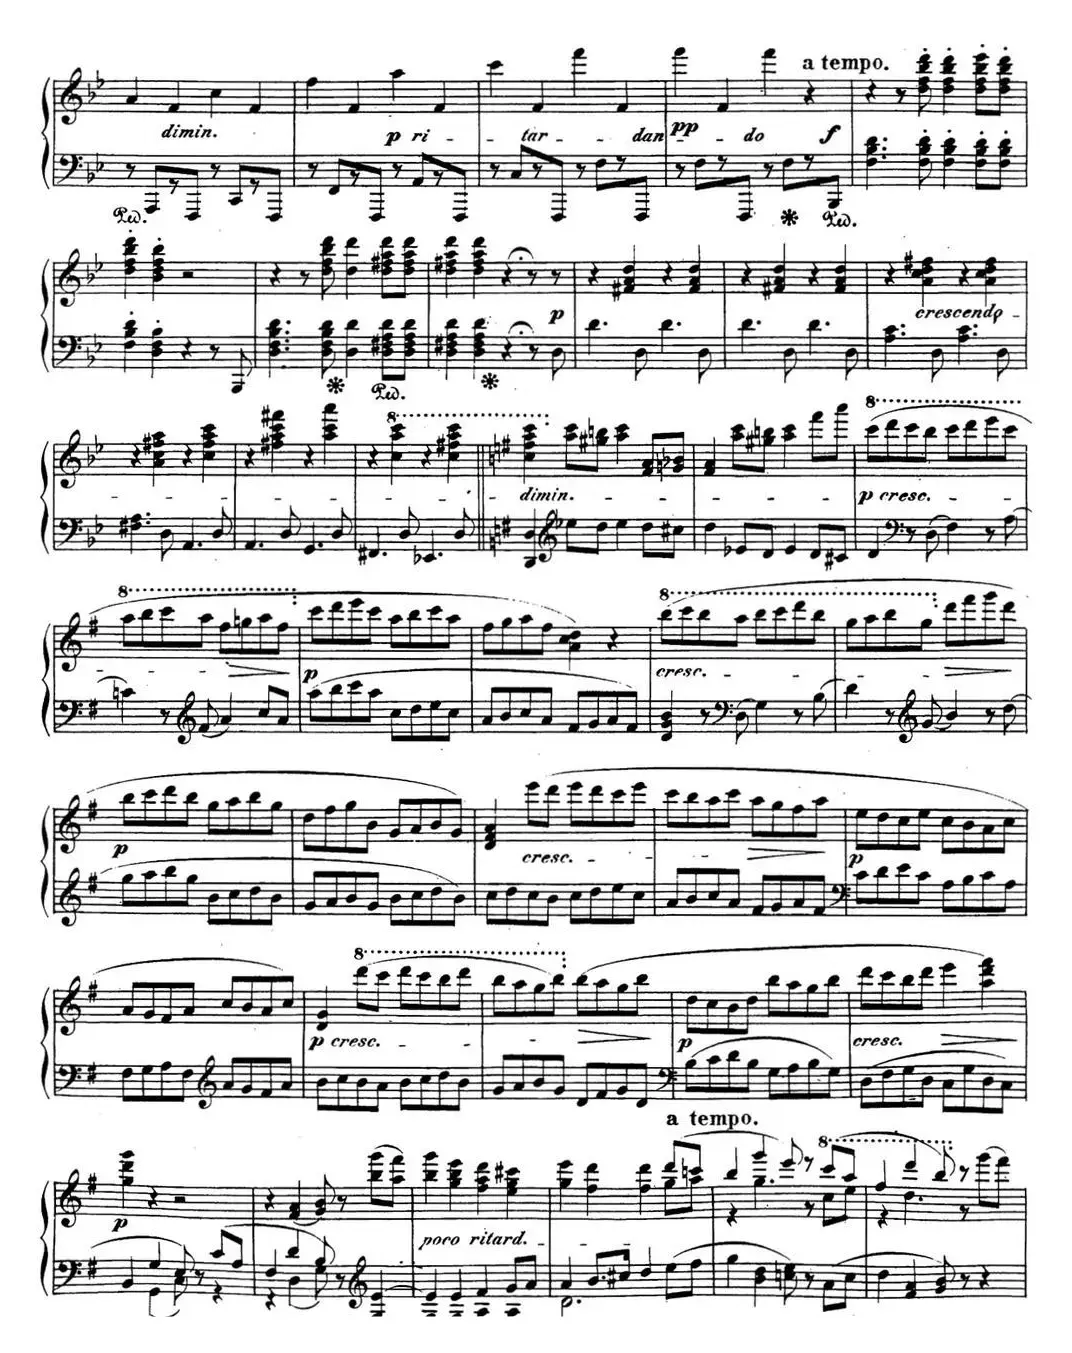 贝多芬钢琴奏鸣曲29 钢琴（锥子键琴）降B大调 Op.106 B-flat major